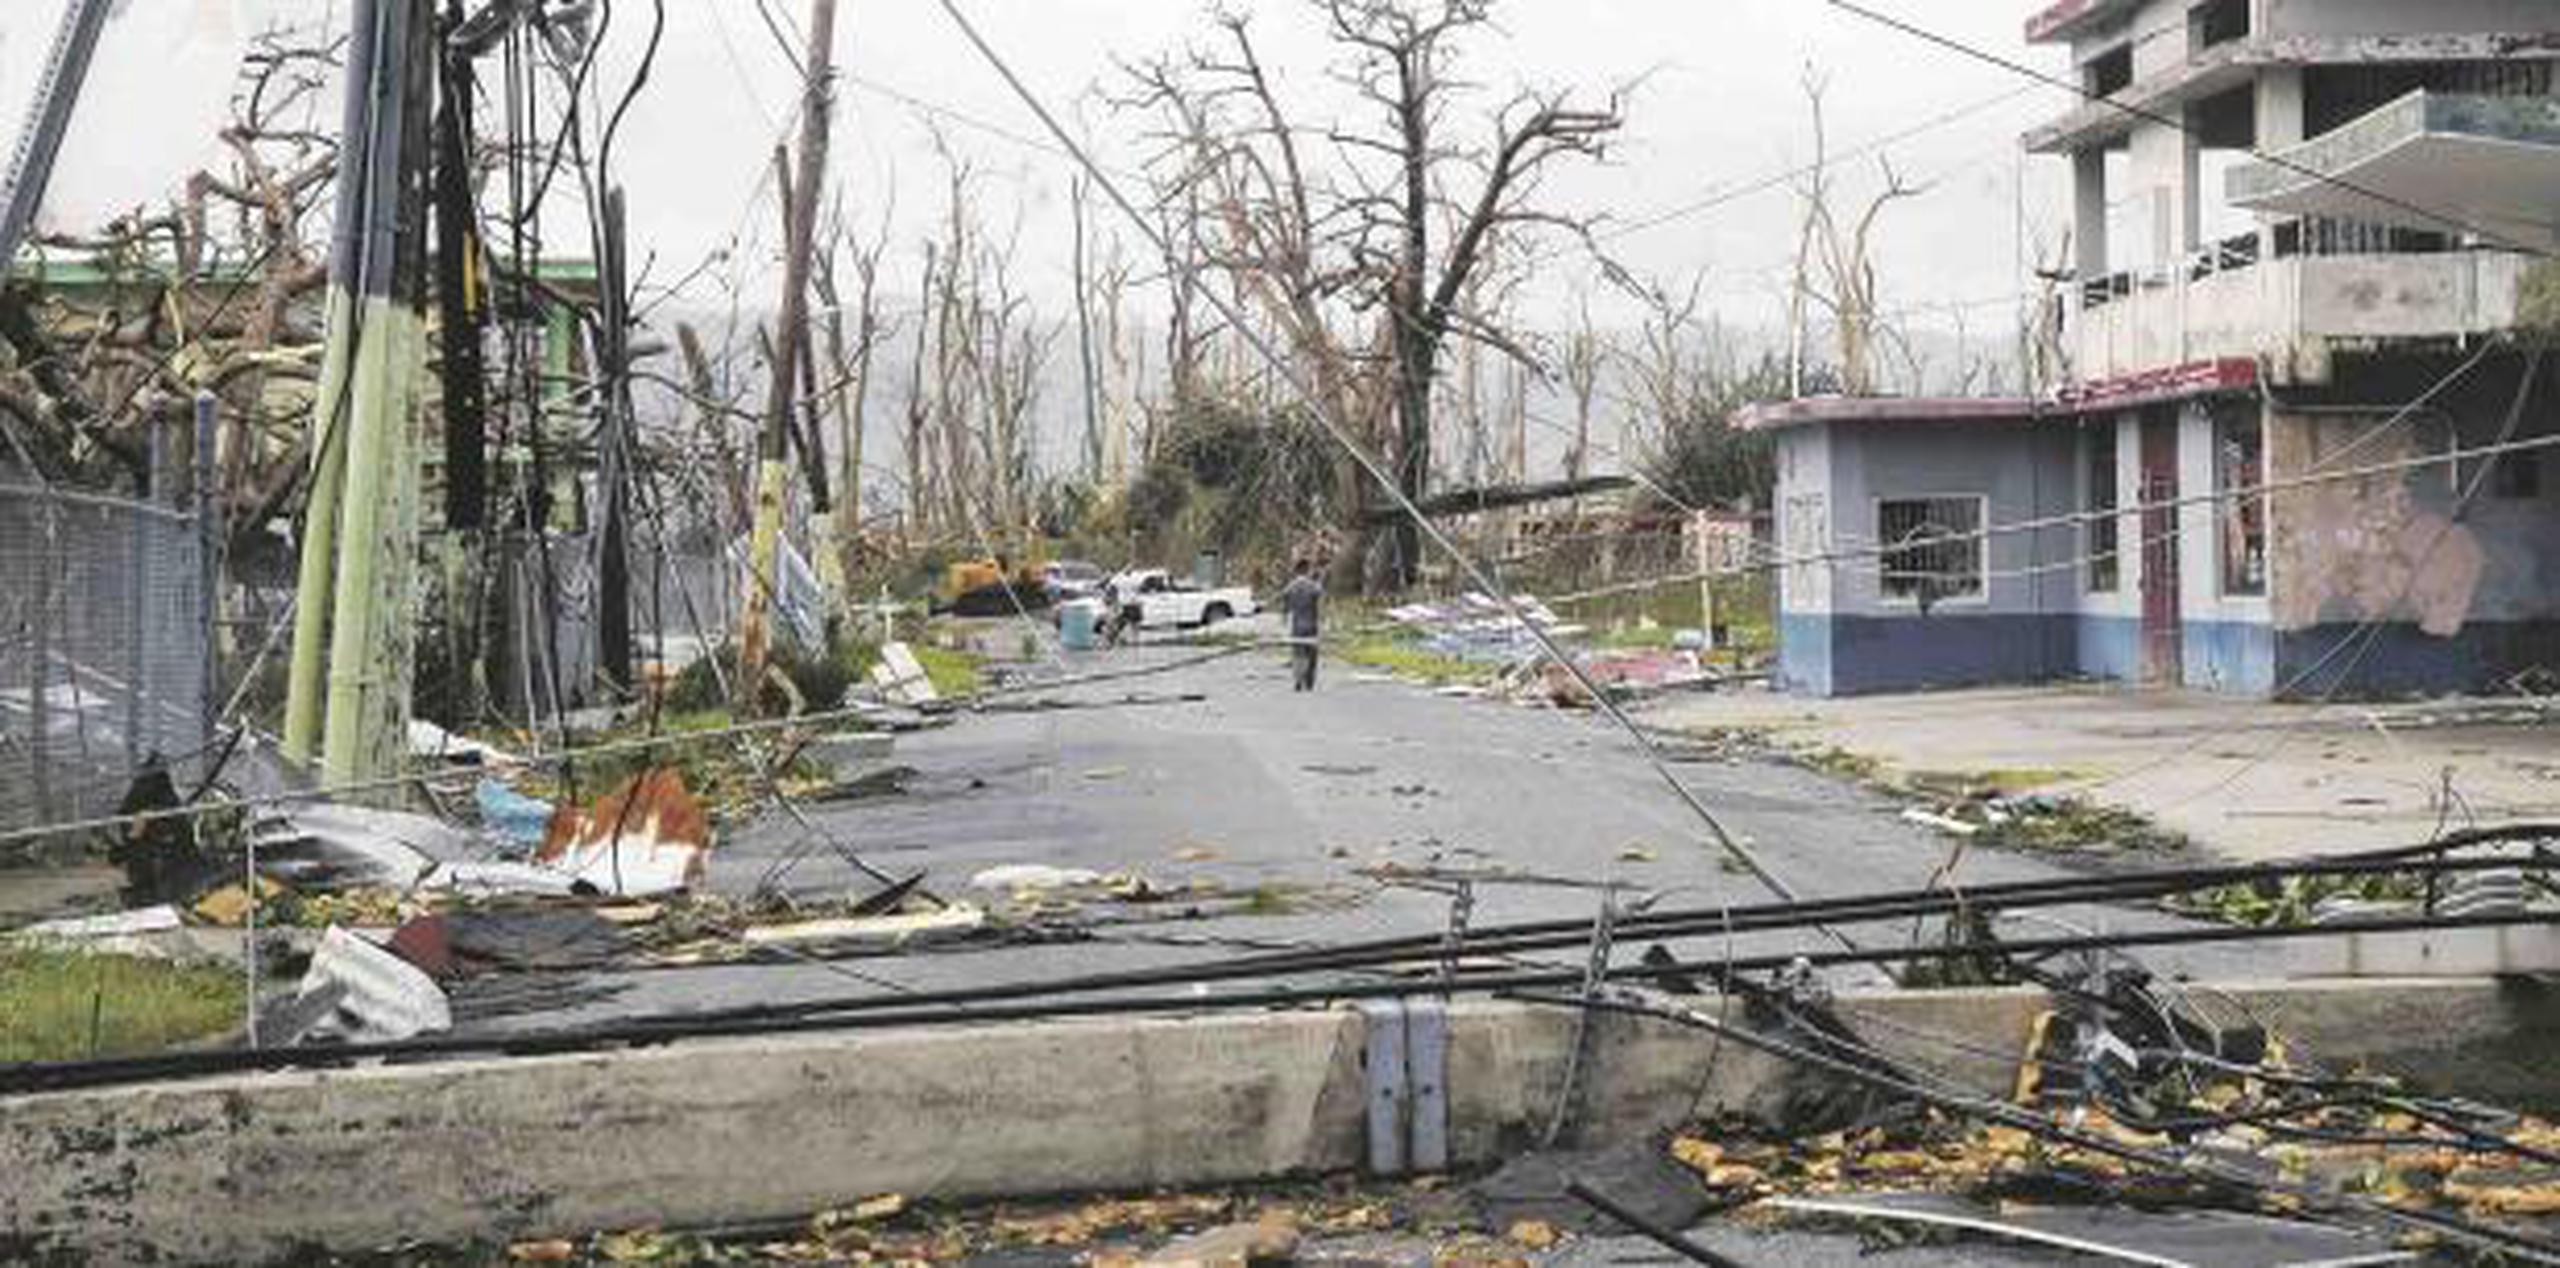 Parte de la devastación en Yabucoa poco después del ciclón. (Archivo)